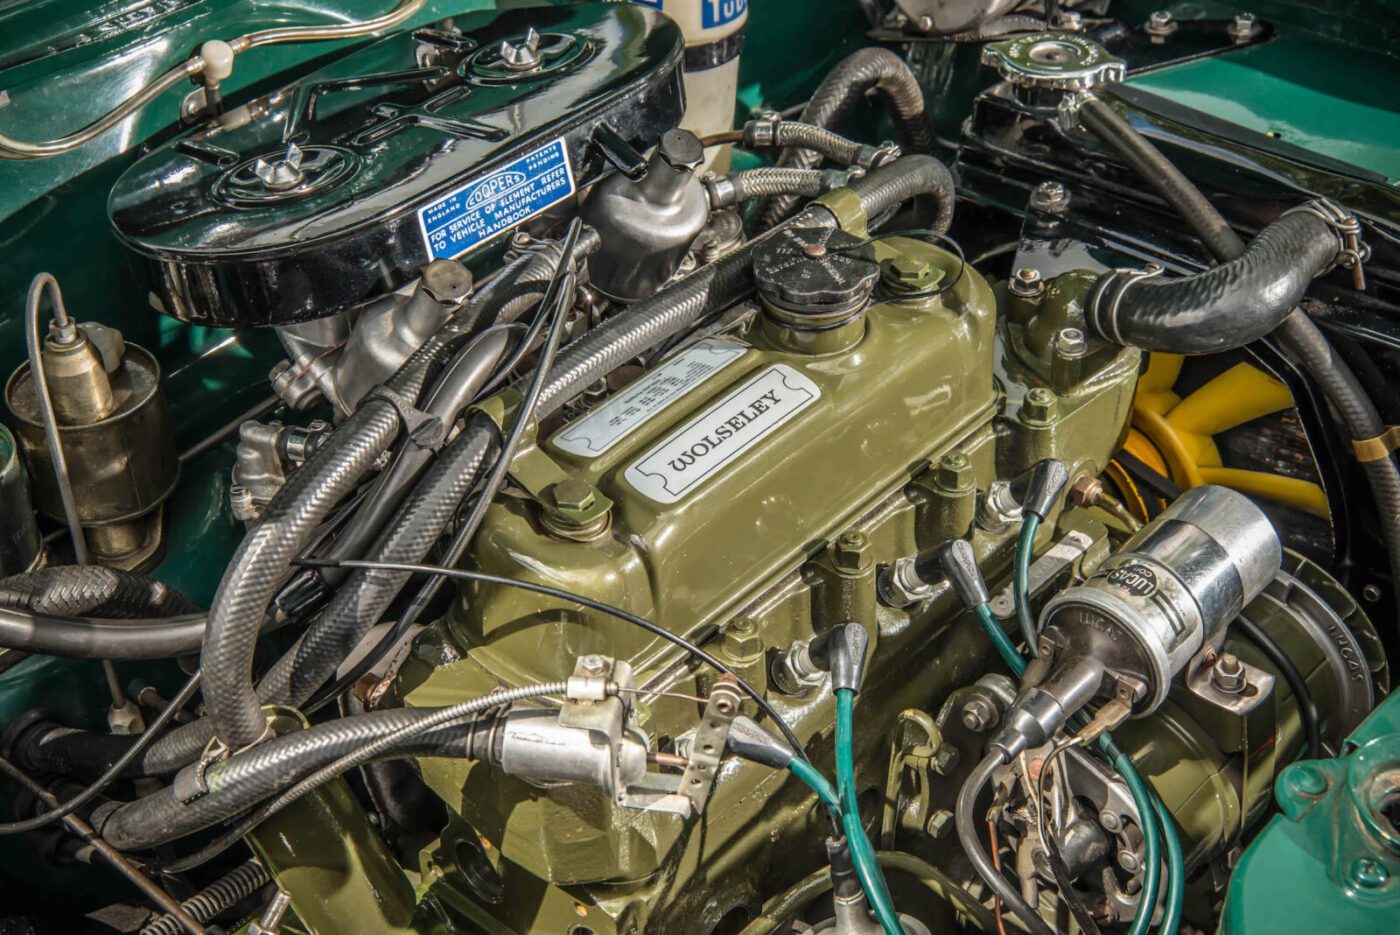 Wolseley 1100 engine close-up